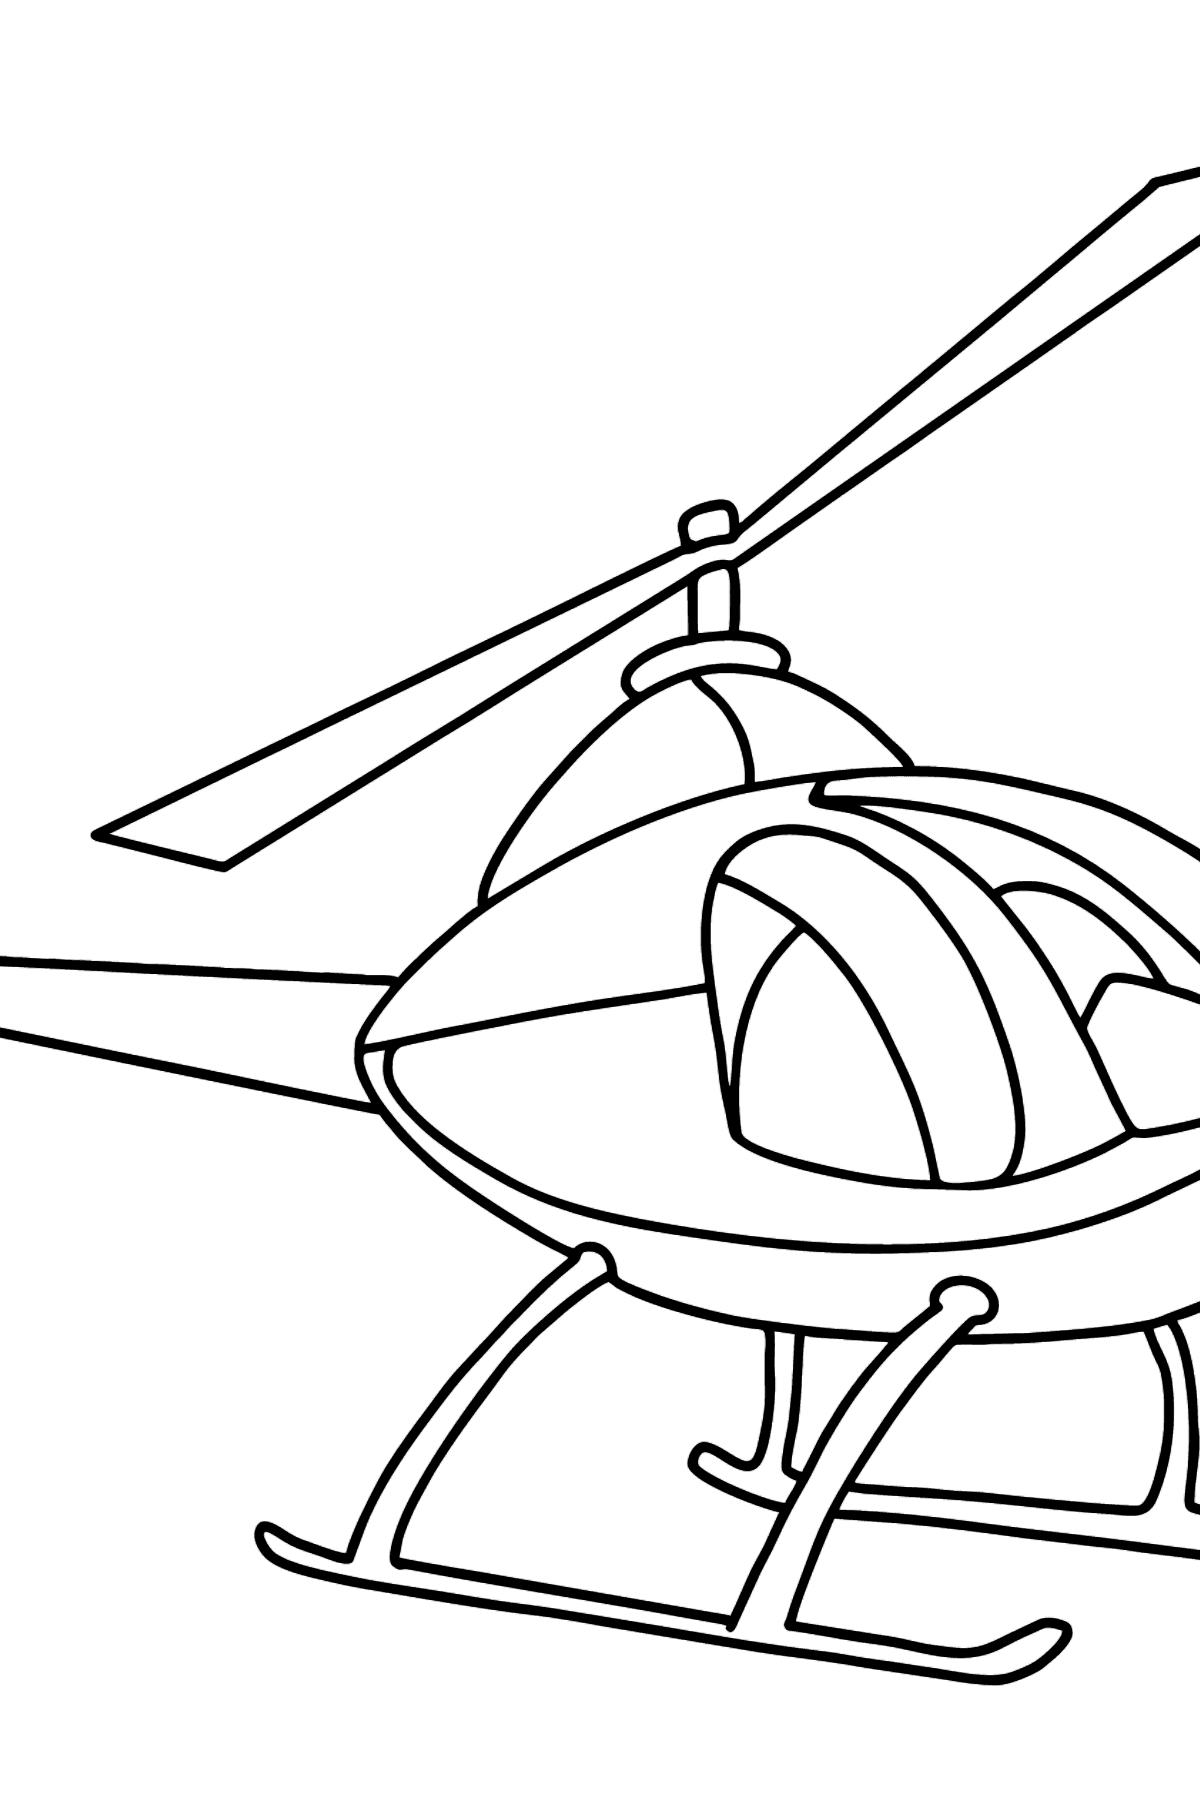 Раскраска вертолет для детей - Картинки для Детей